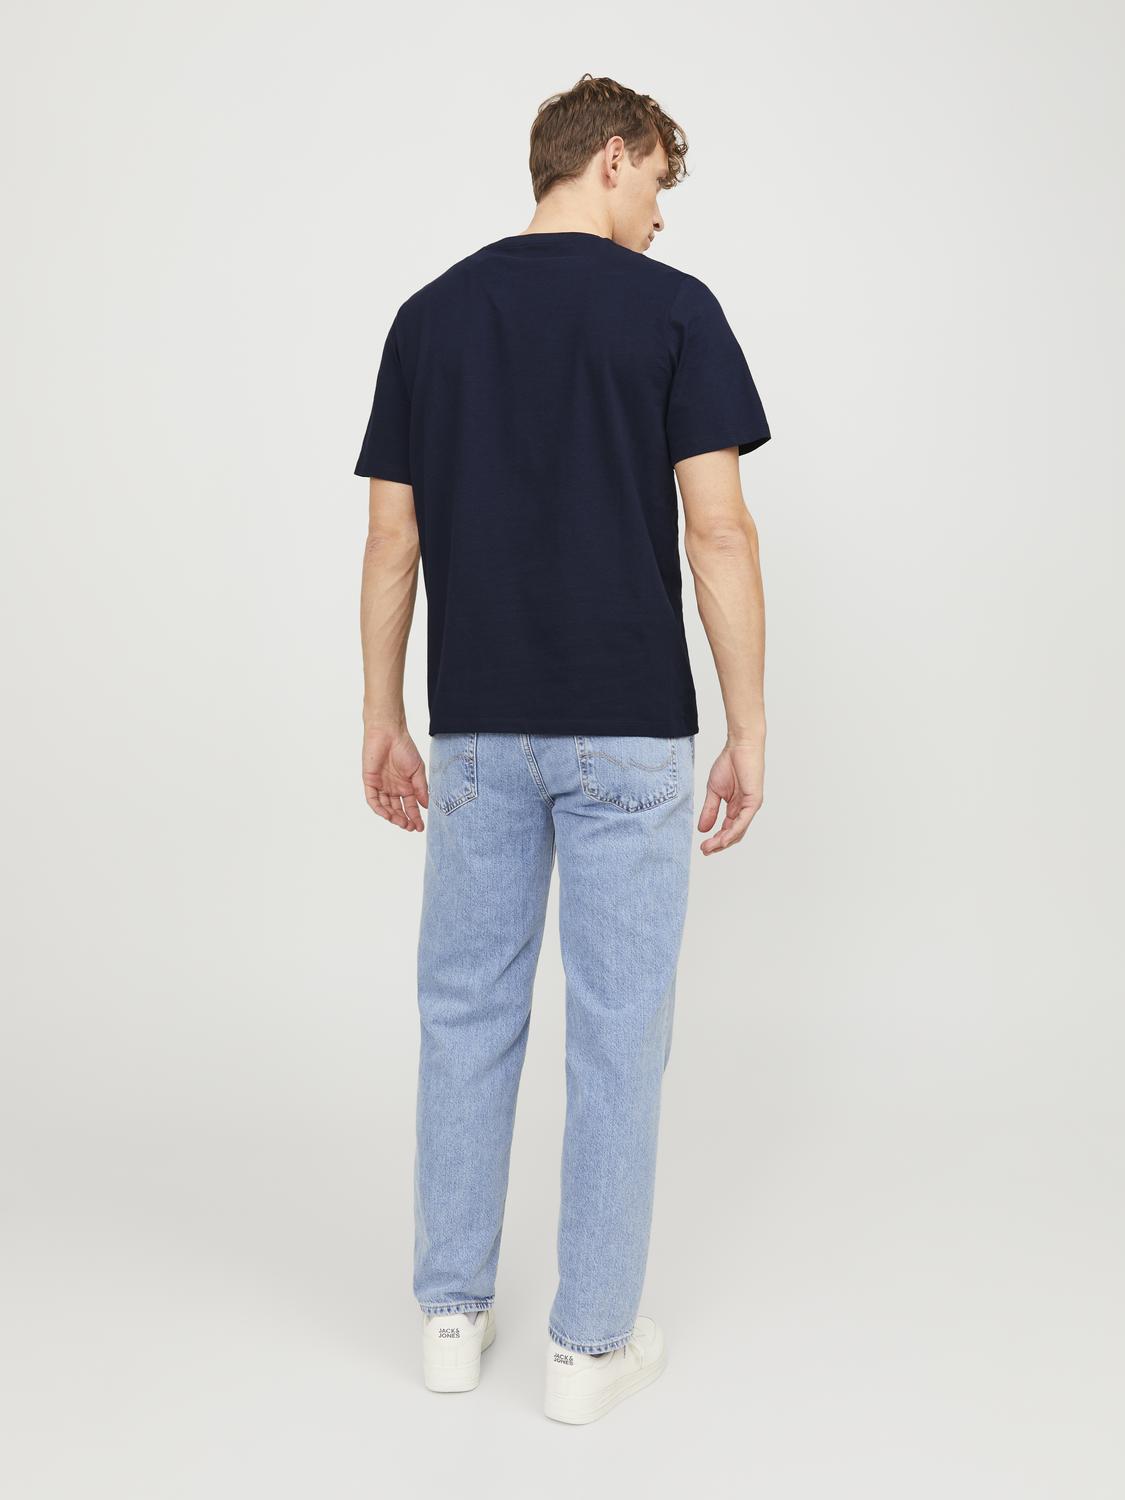 Camiseta manga corta con logo azul - JJZURI